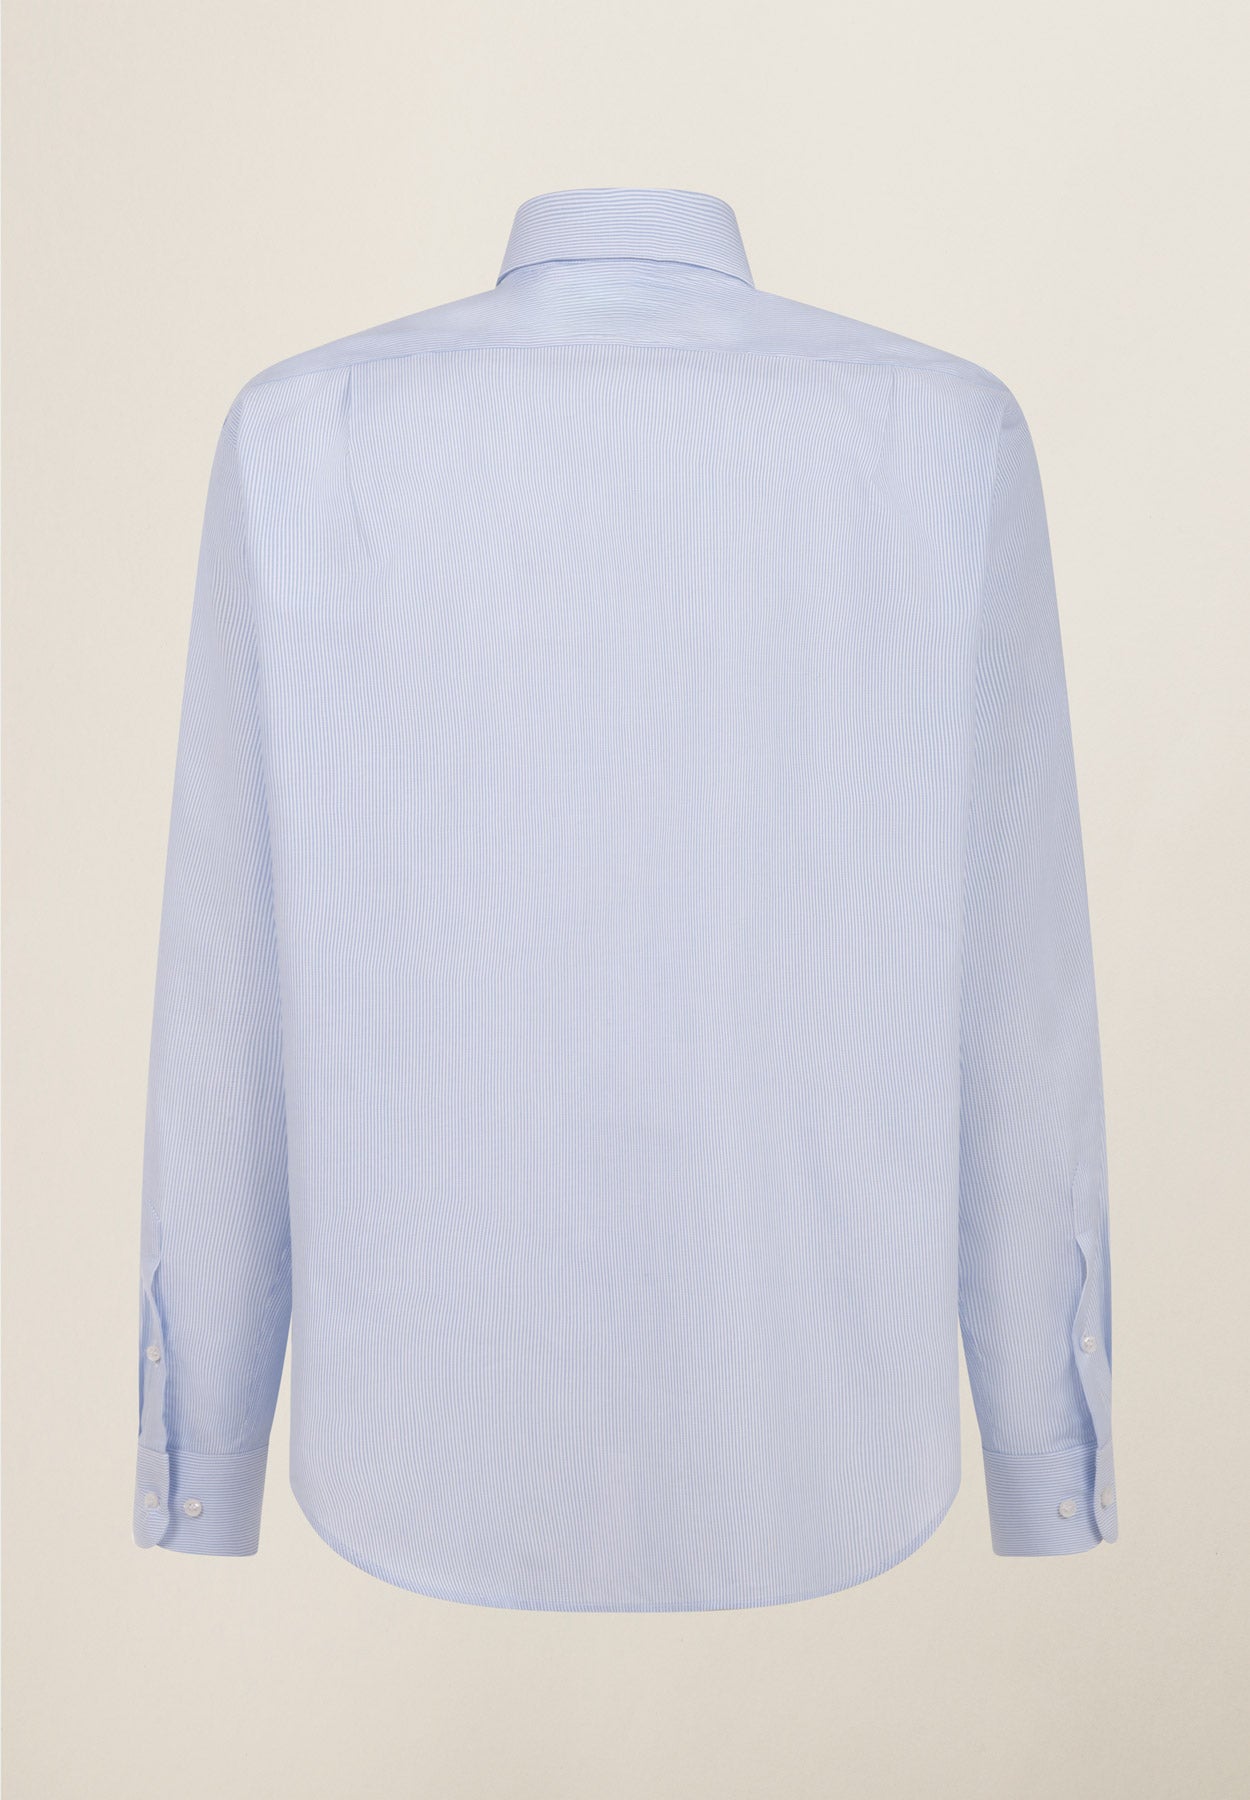 Hellblau gestreiftes Baumwollhemd mit bequemer Passform